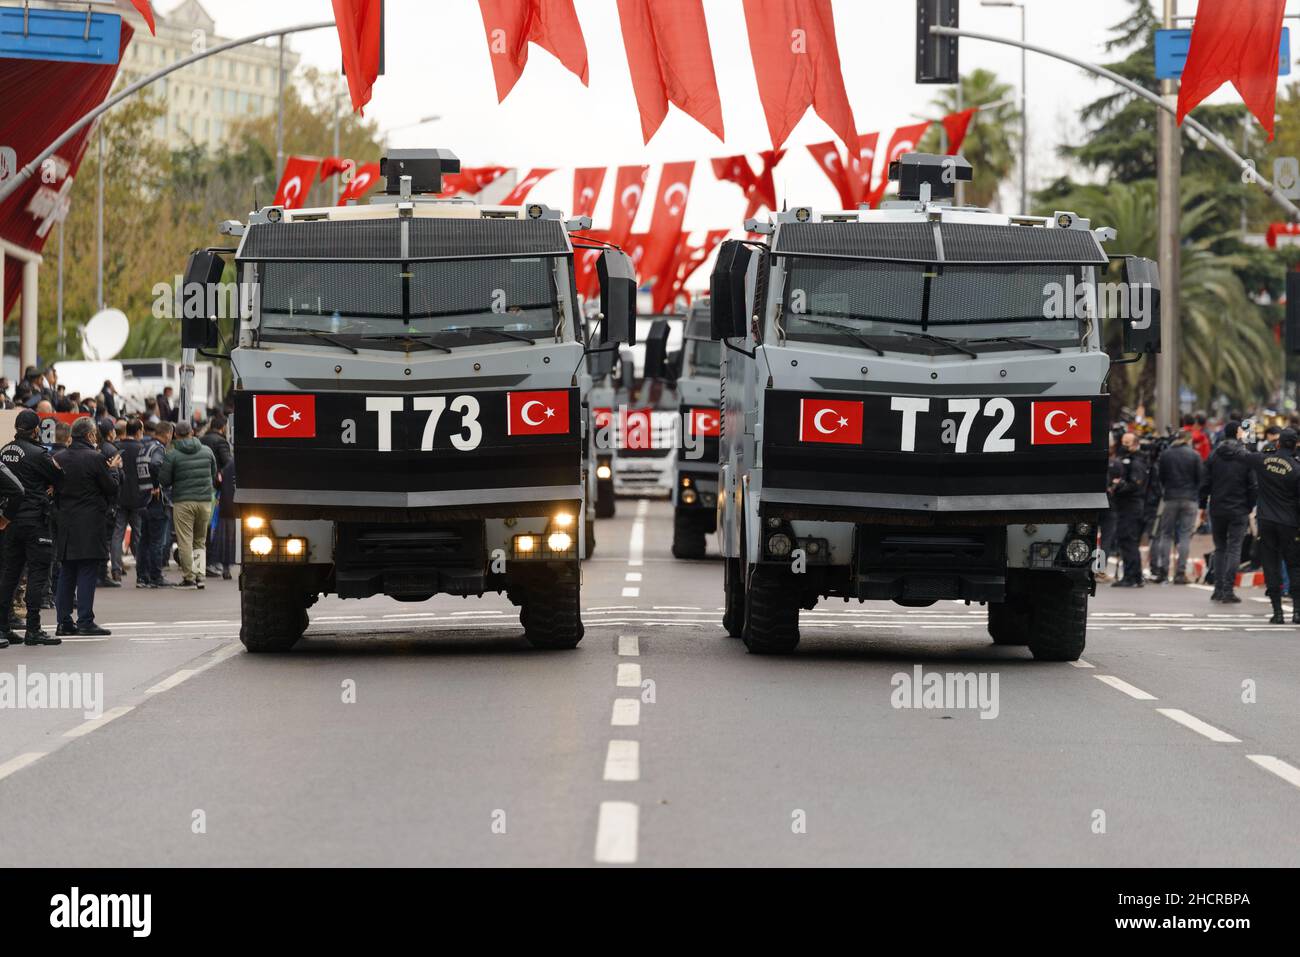 Istanbul, Türkei - 29. Oktober 2021: Parade der Polizei zur Kontrolle der Fahrzeuge am 29. Oktober zum Tag der Republik Türkei Stockfoto